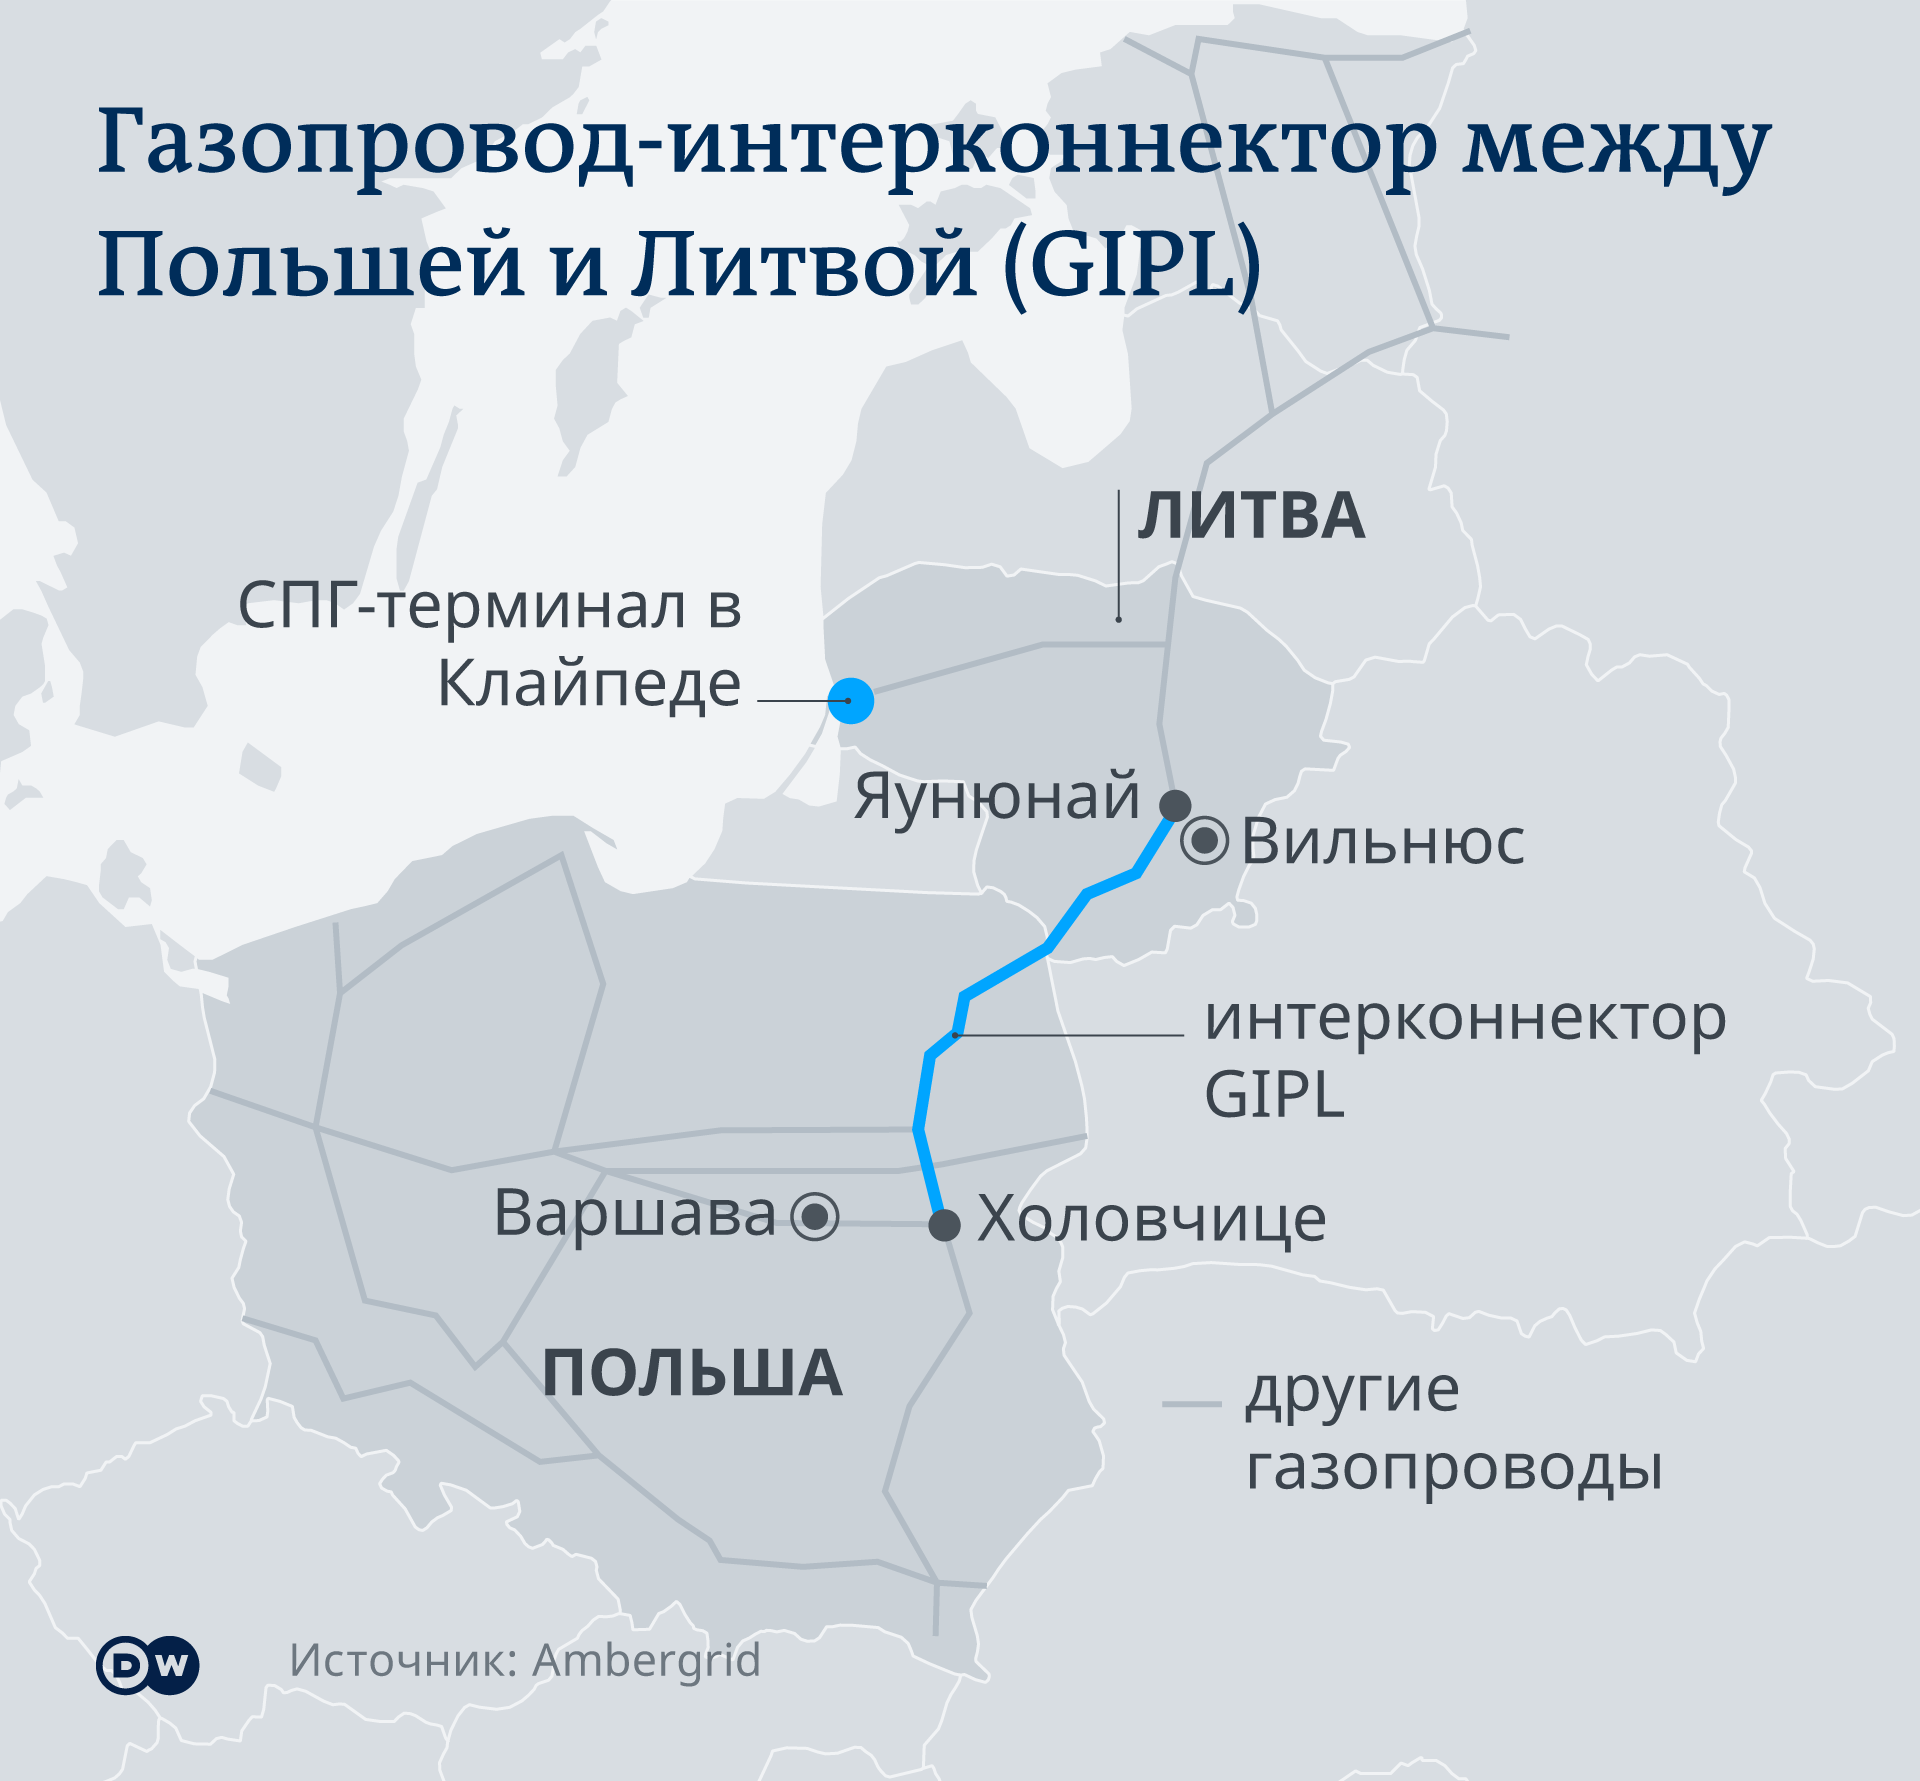 Инфографика: Газопровод-интерконнектор между Польшей и Литвой (GIPL)